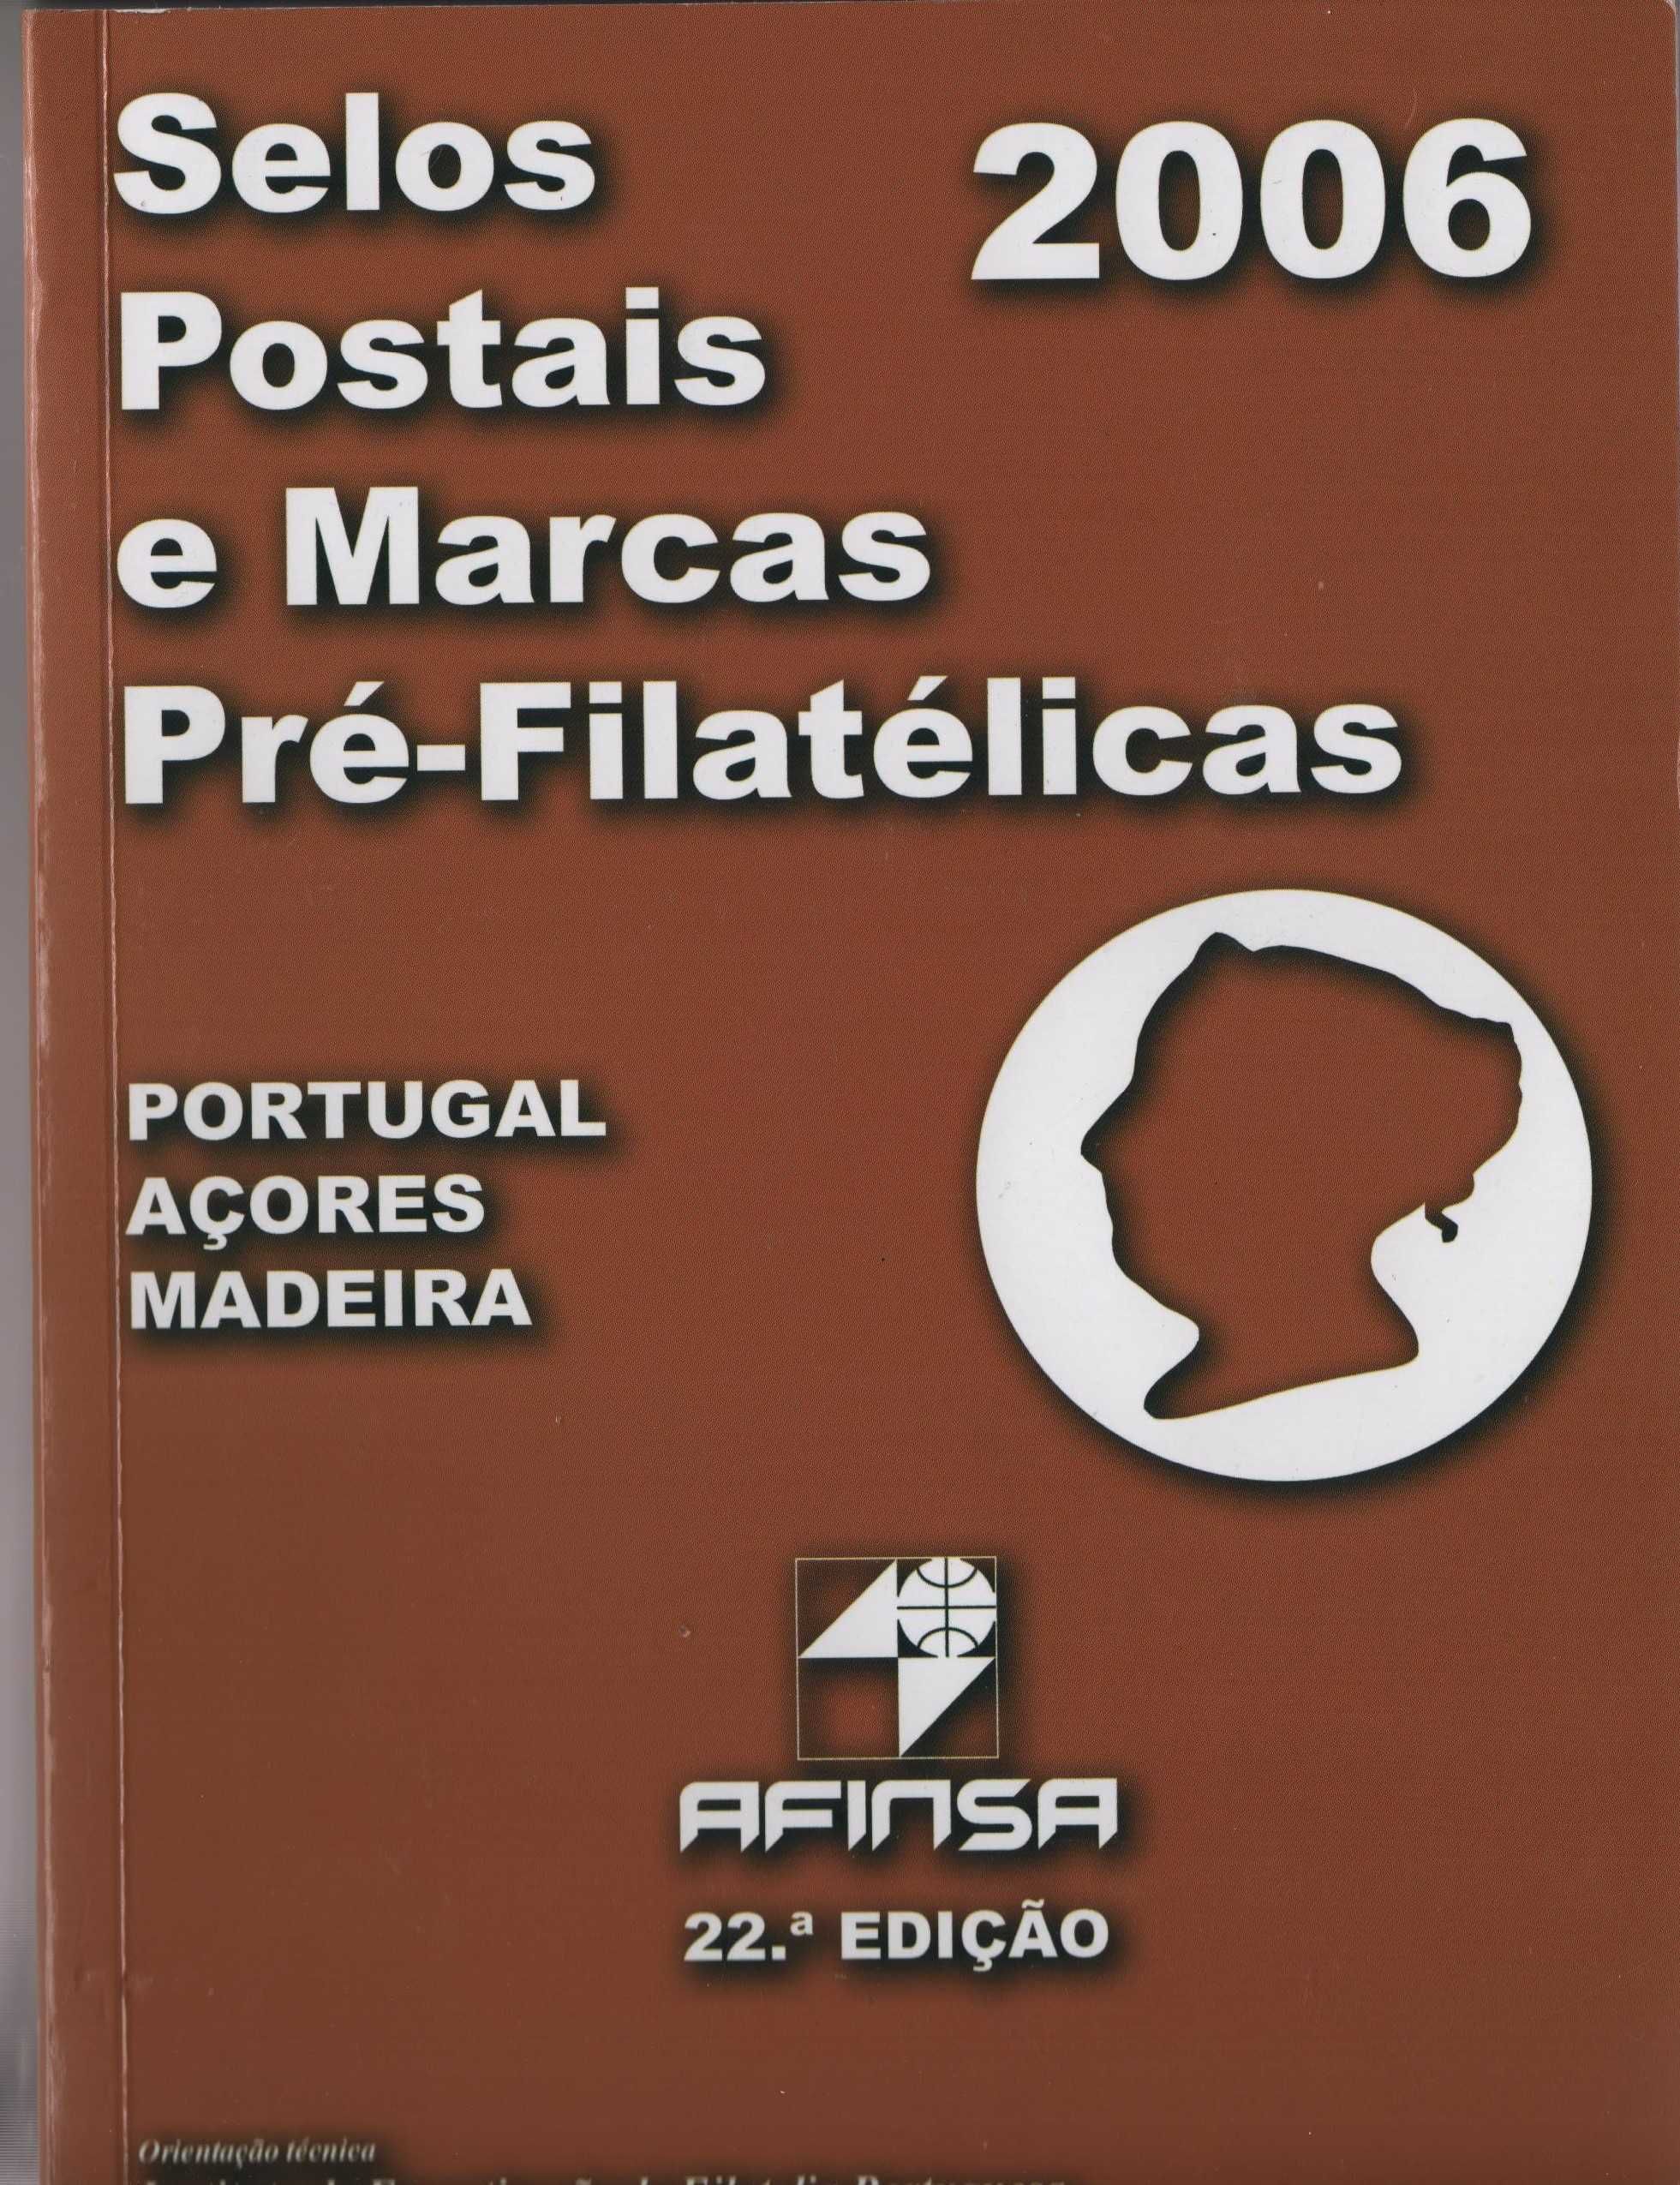 Selos-novos e usados/CATÁLOGO DE SELOS DE PORTUGAL 2006